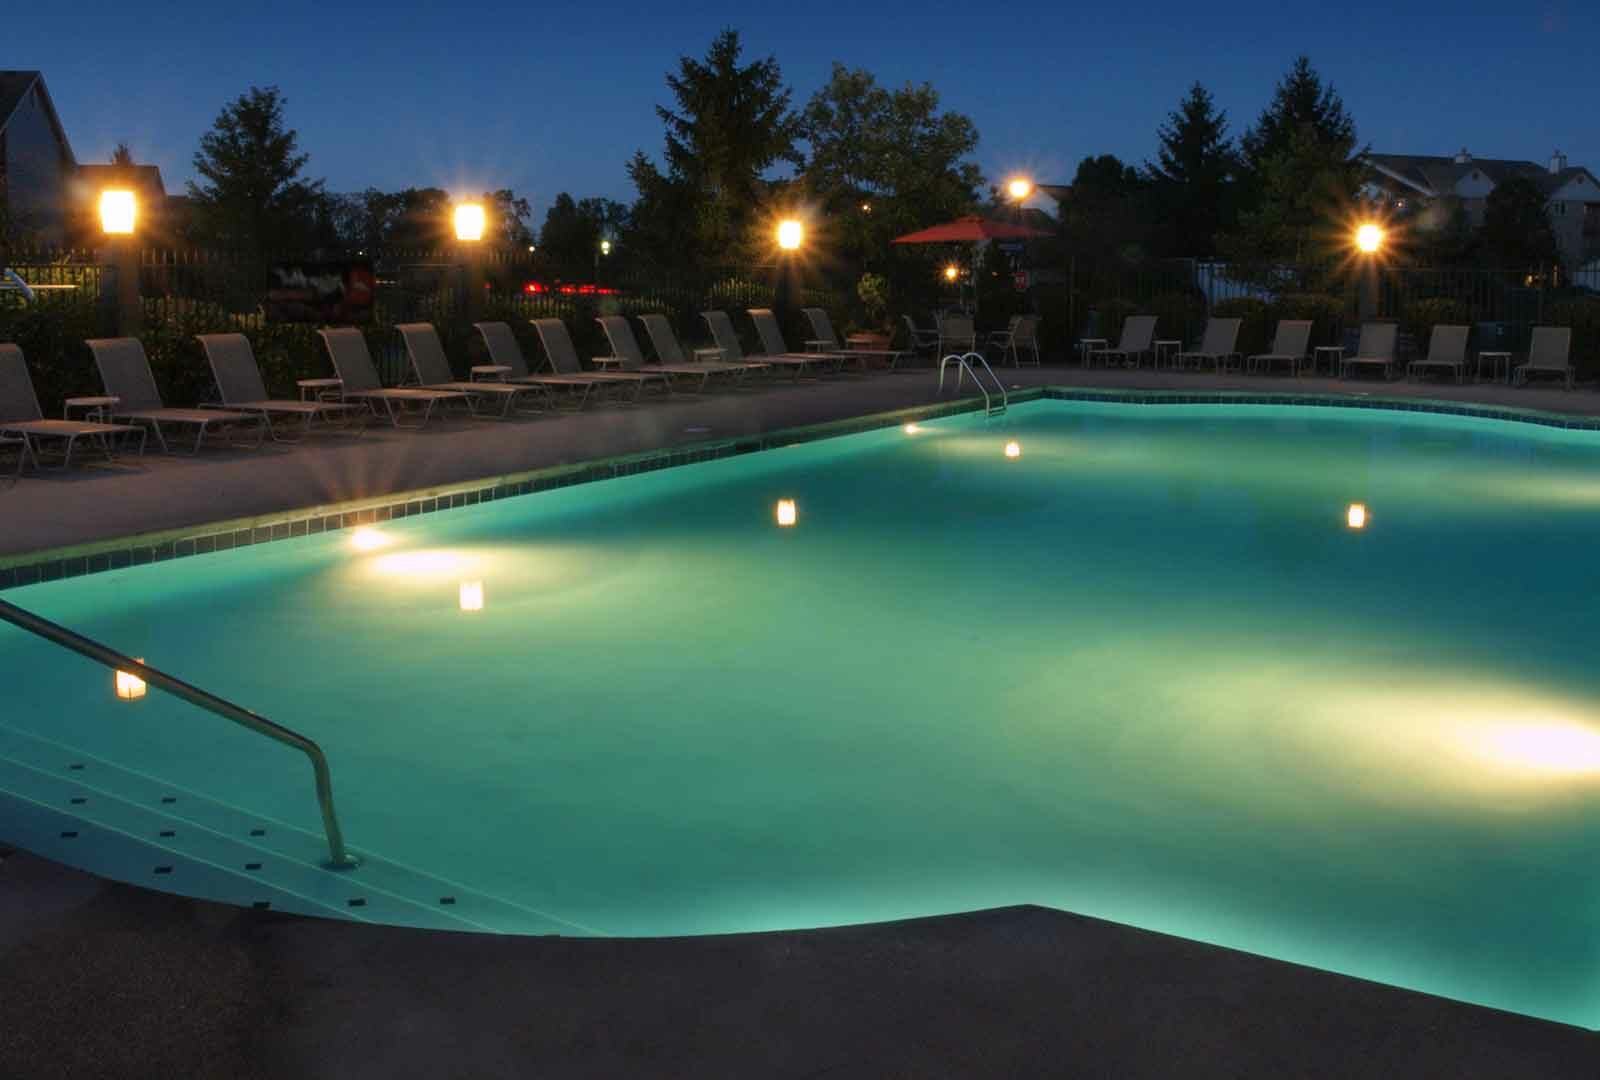 Pool lit at night.